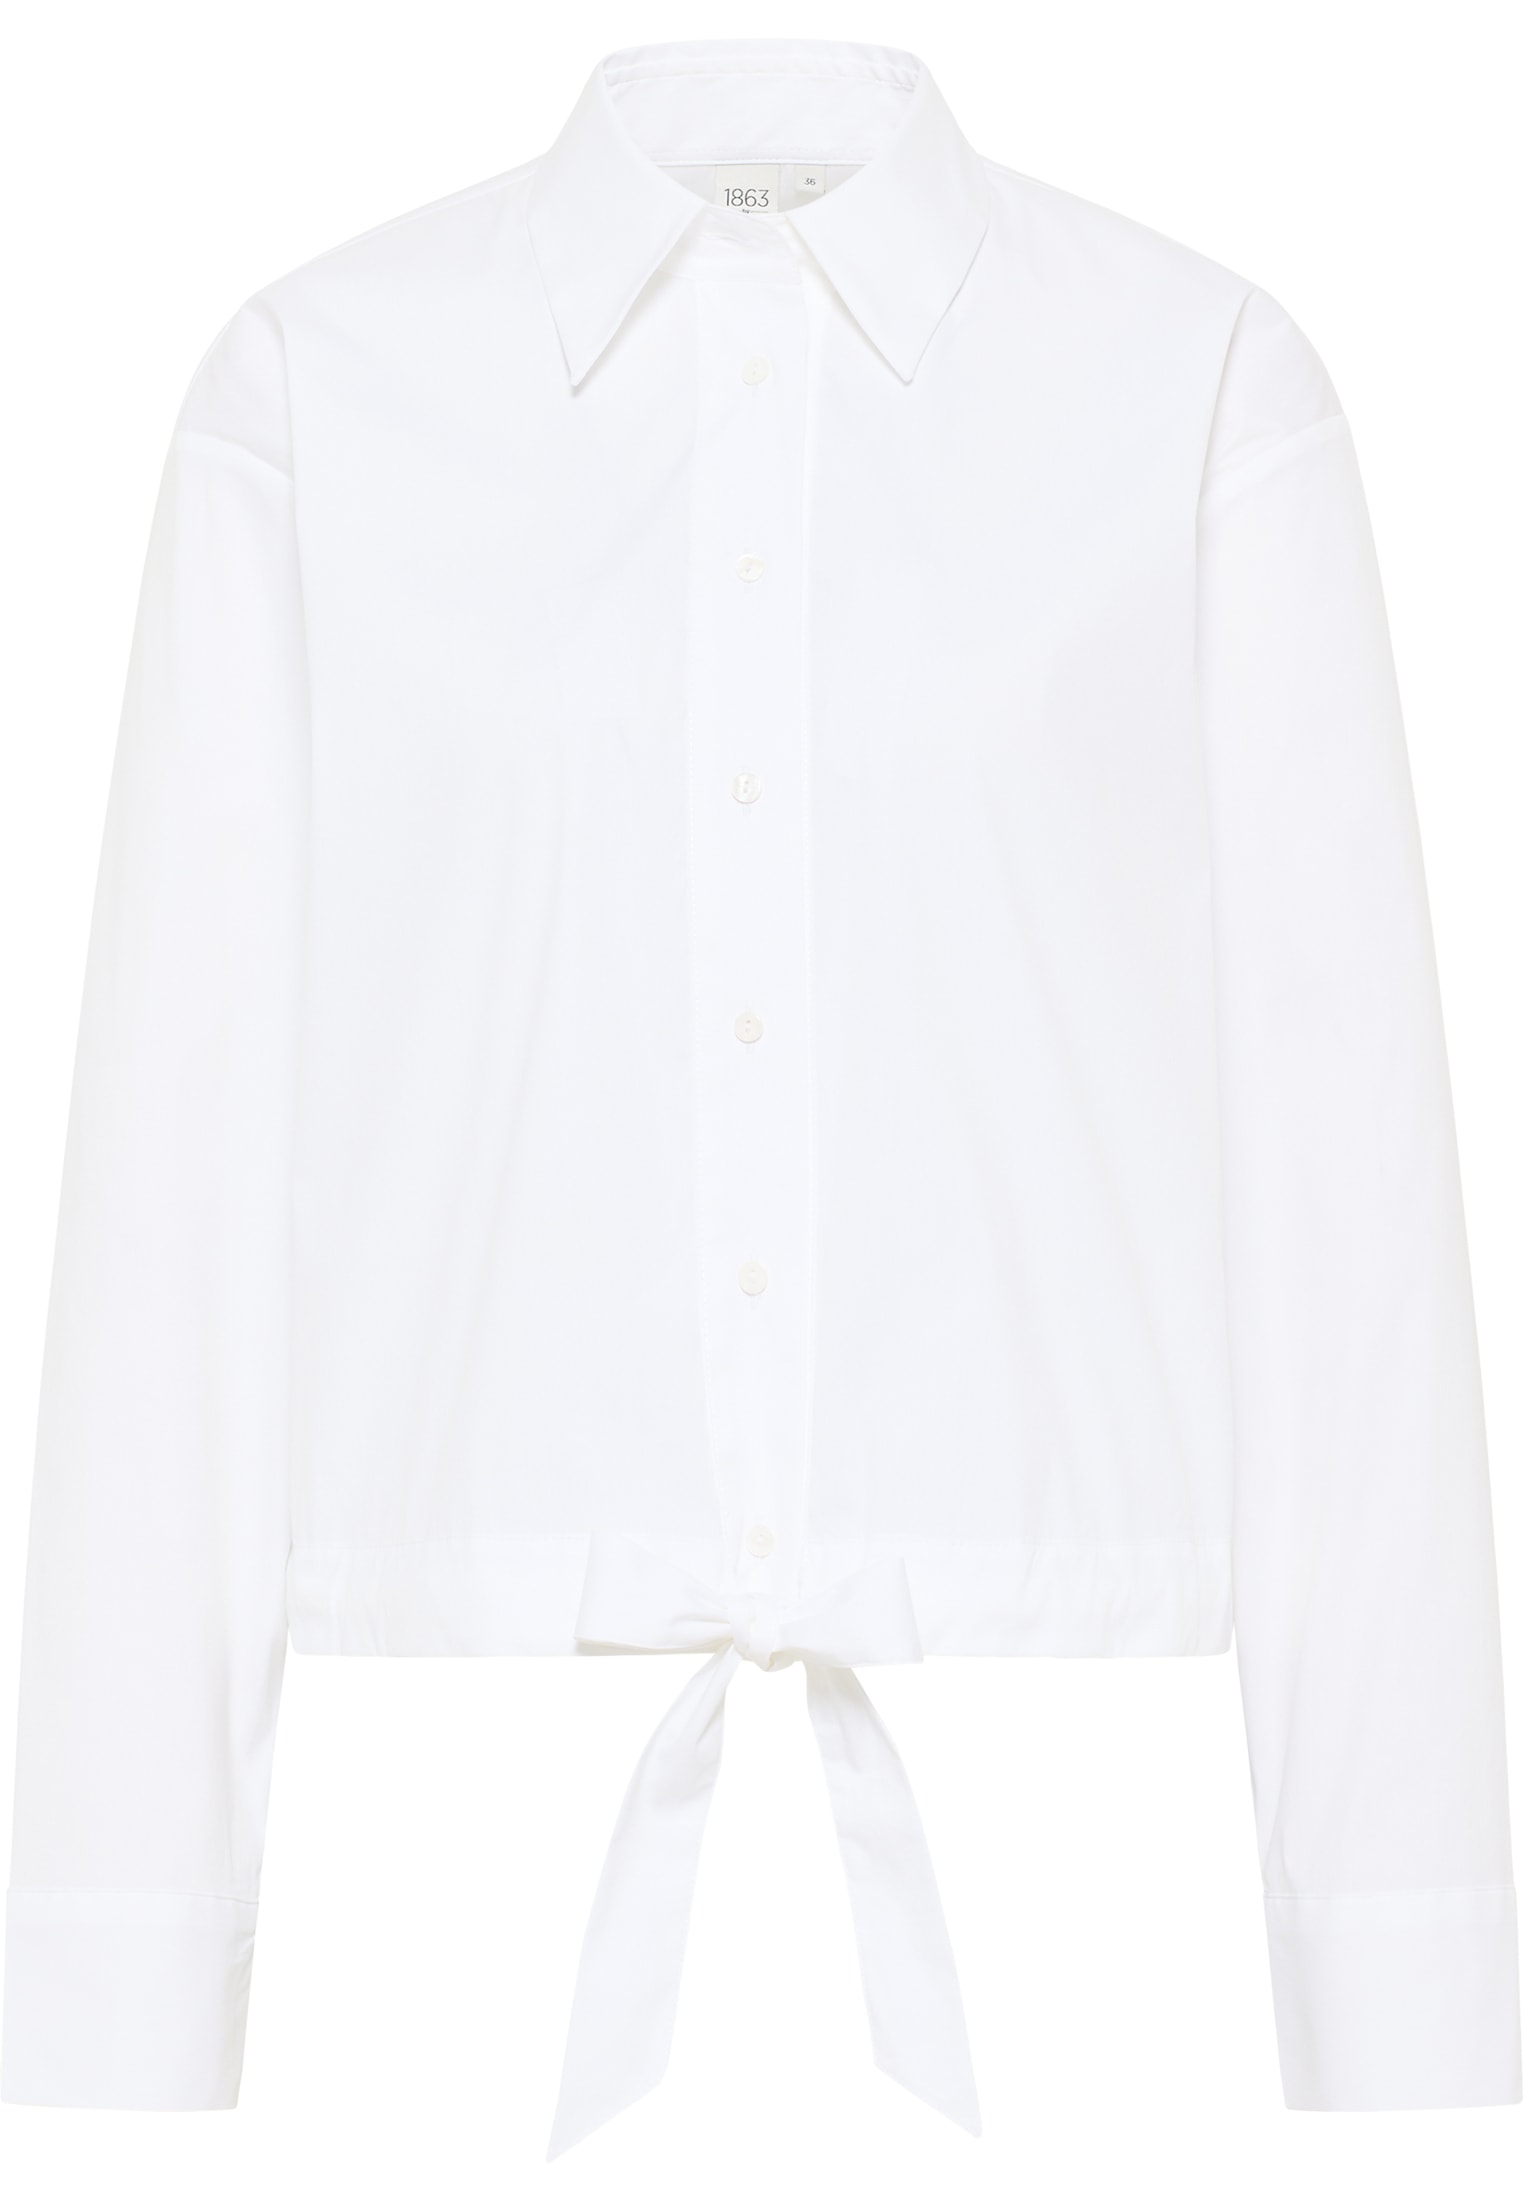 | | unifarben | Signature weiß Bluse weiß in 34 Shirt | Langarm 2BL04027-00-01-34-1/1